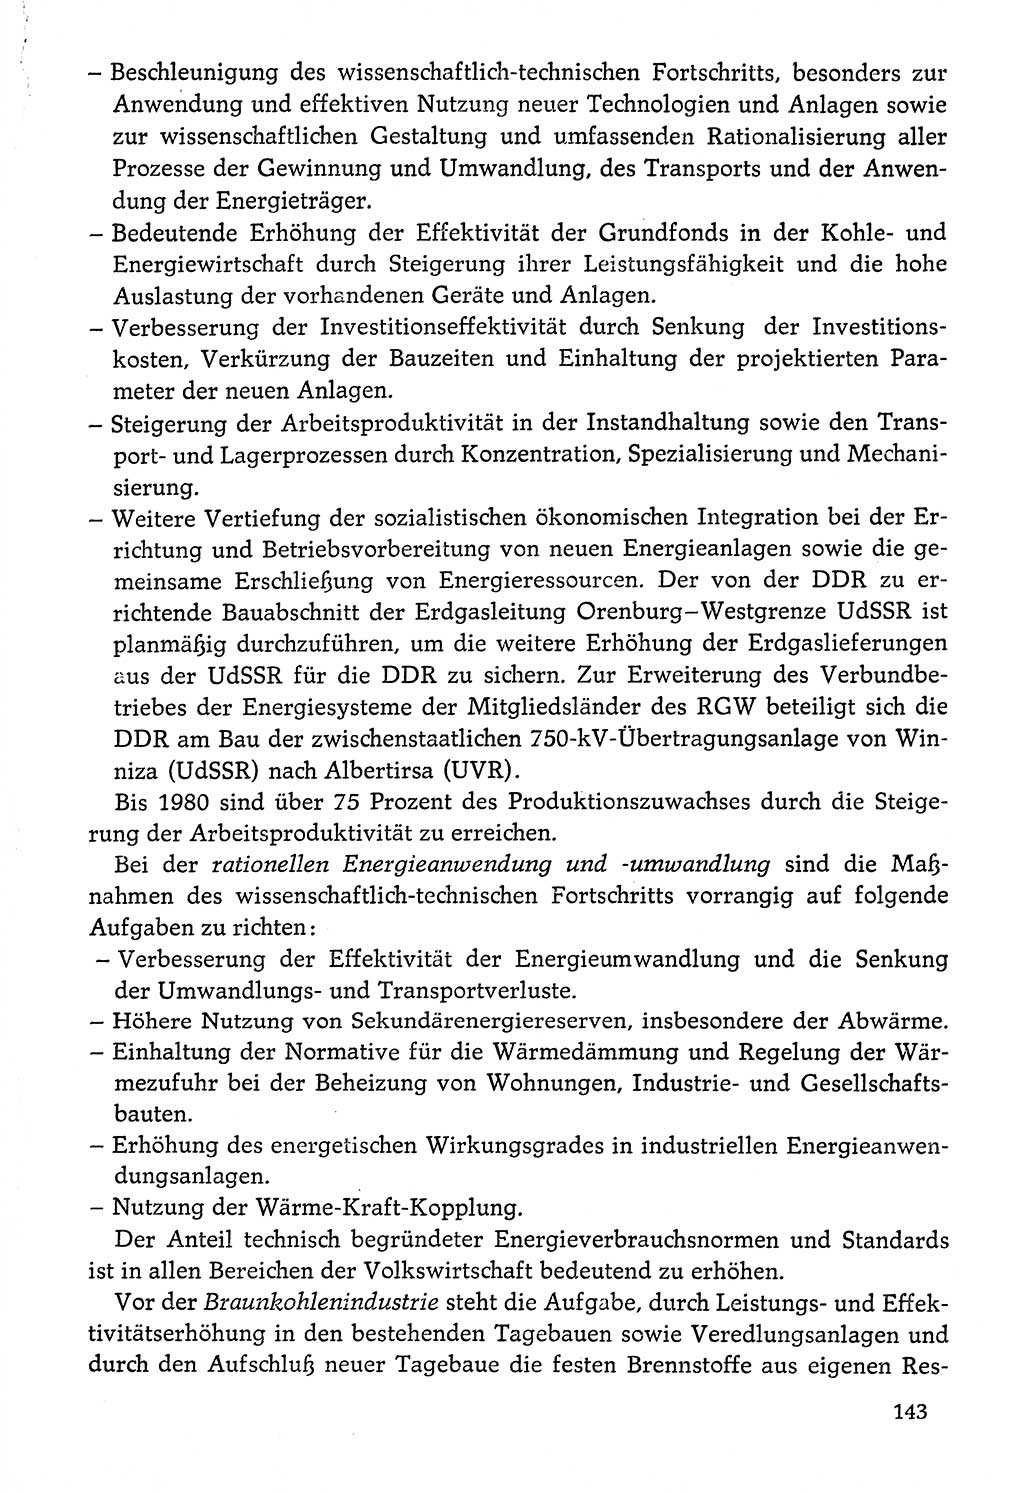 Dokumente der Sozialistischen Einheitspartei Deutschlands (SED) [Deutsche Demokratische Republik (DDR)] 1976-1977, Seite 143 (Dok. SED DDR 1976-1977, S. 143)